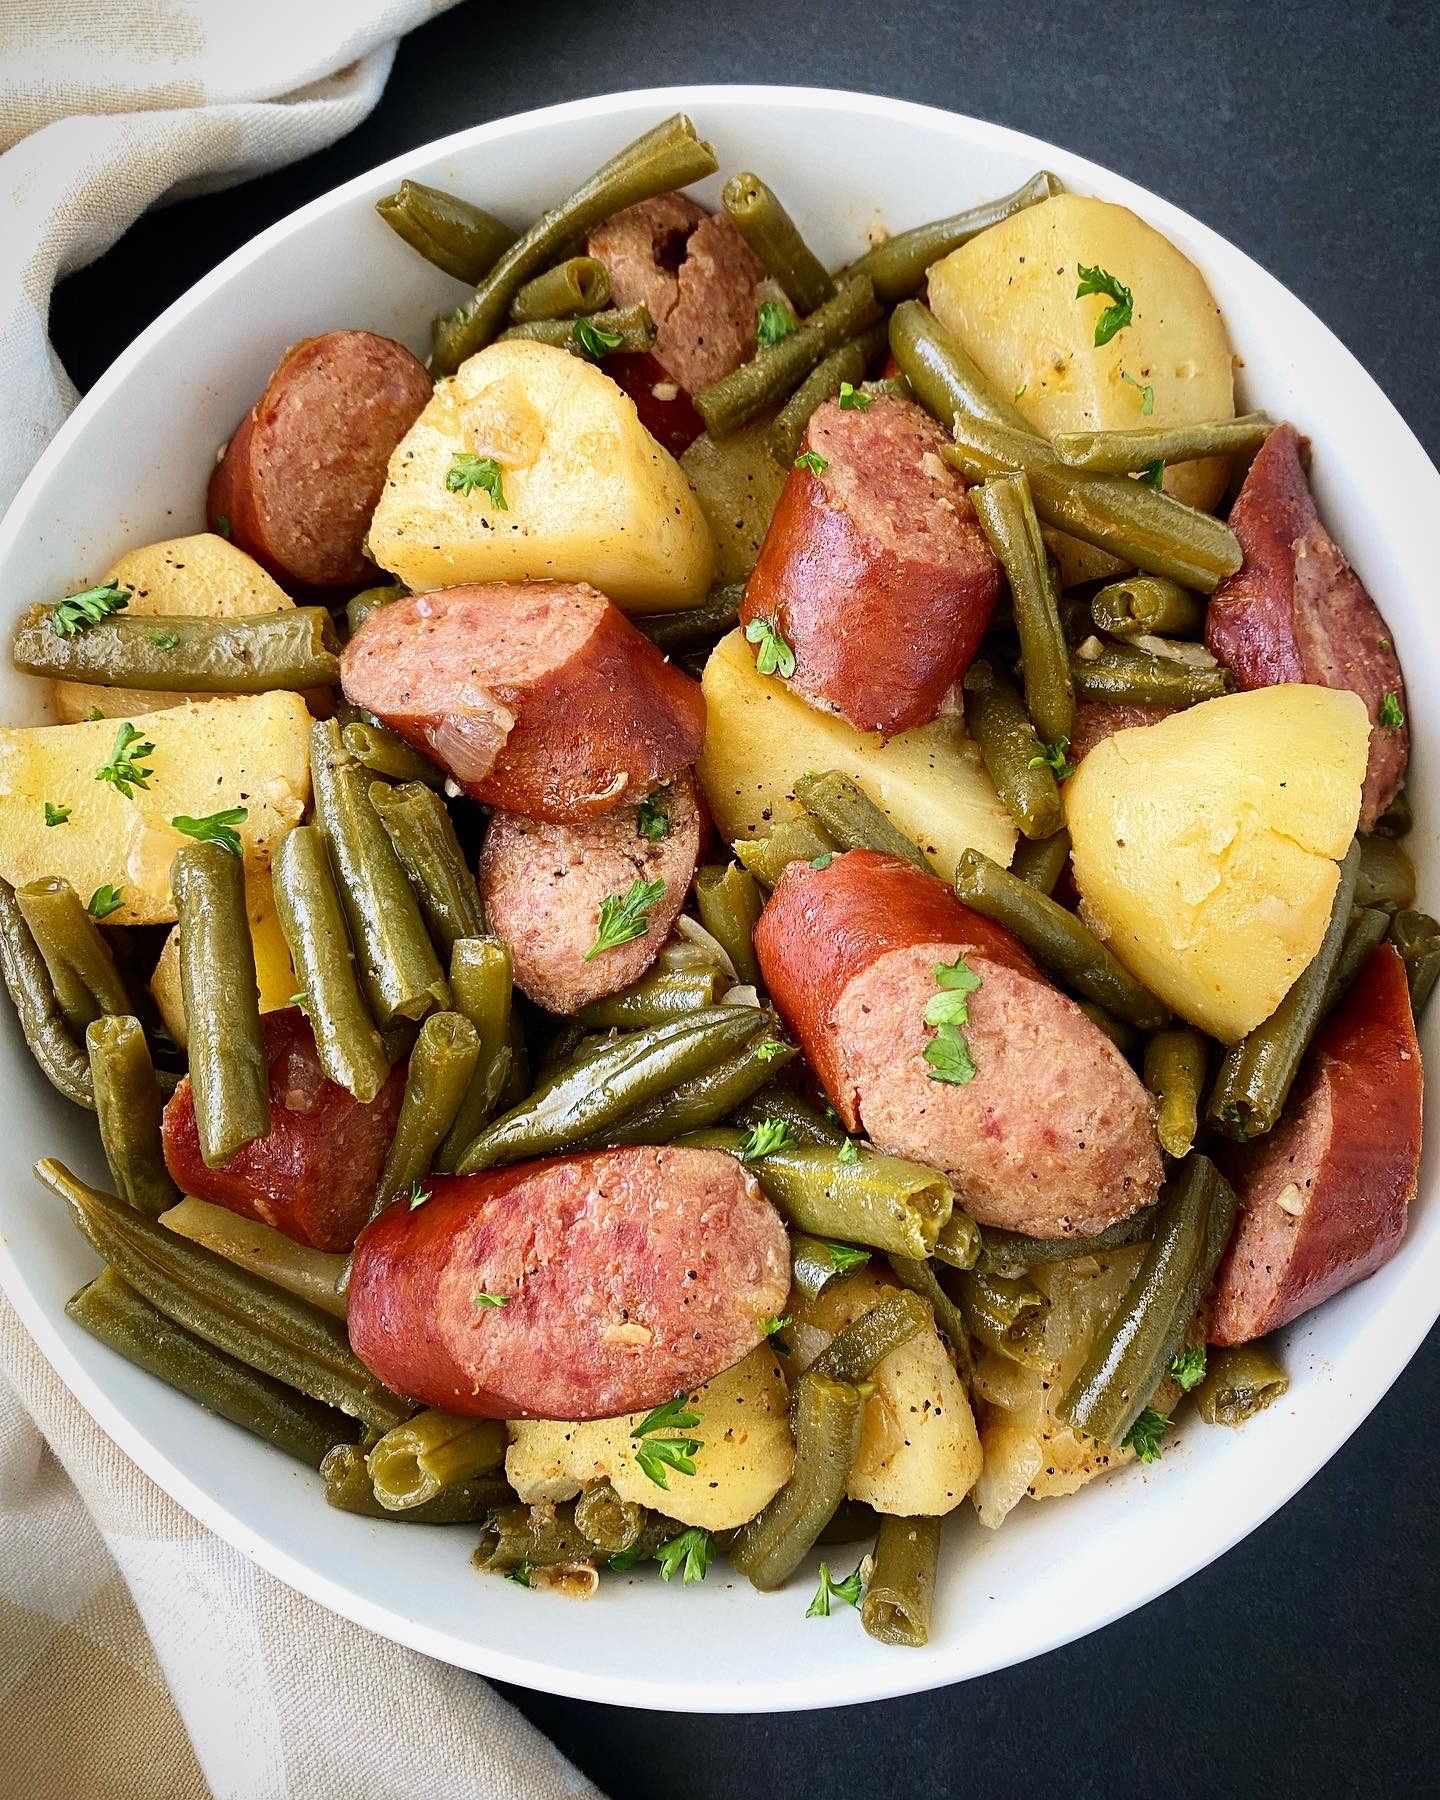 https://fitslowcookerqueen.com/wp-content/uploads/2018/12/Crockpot-Sausage-Potatoes-Green-Beans-8.jpg